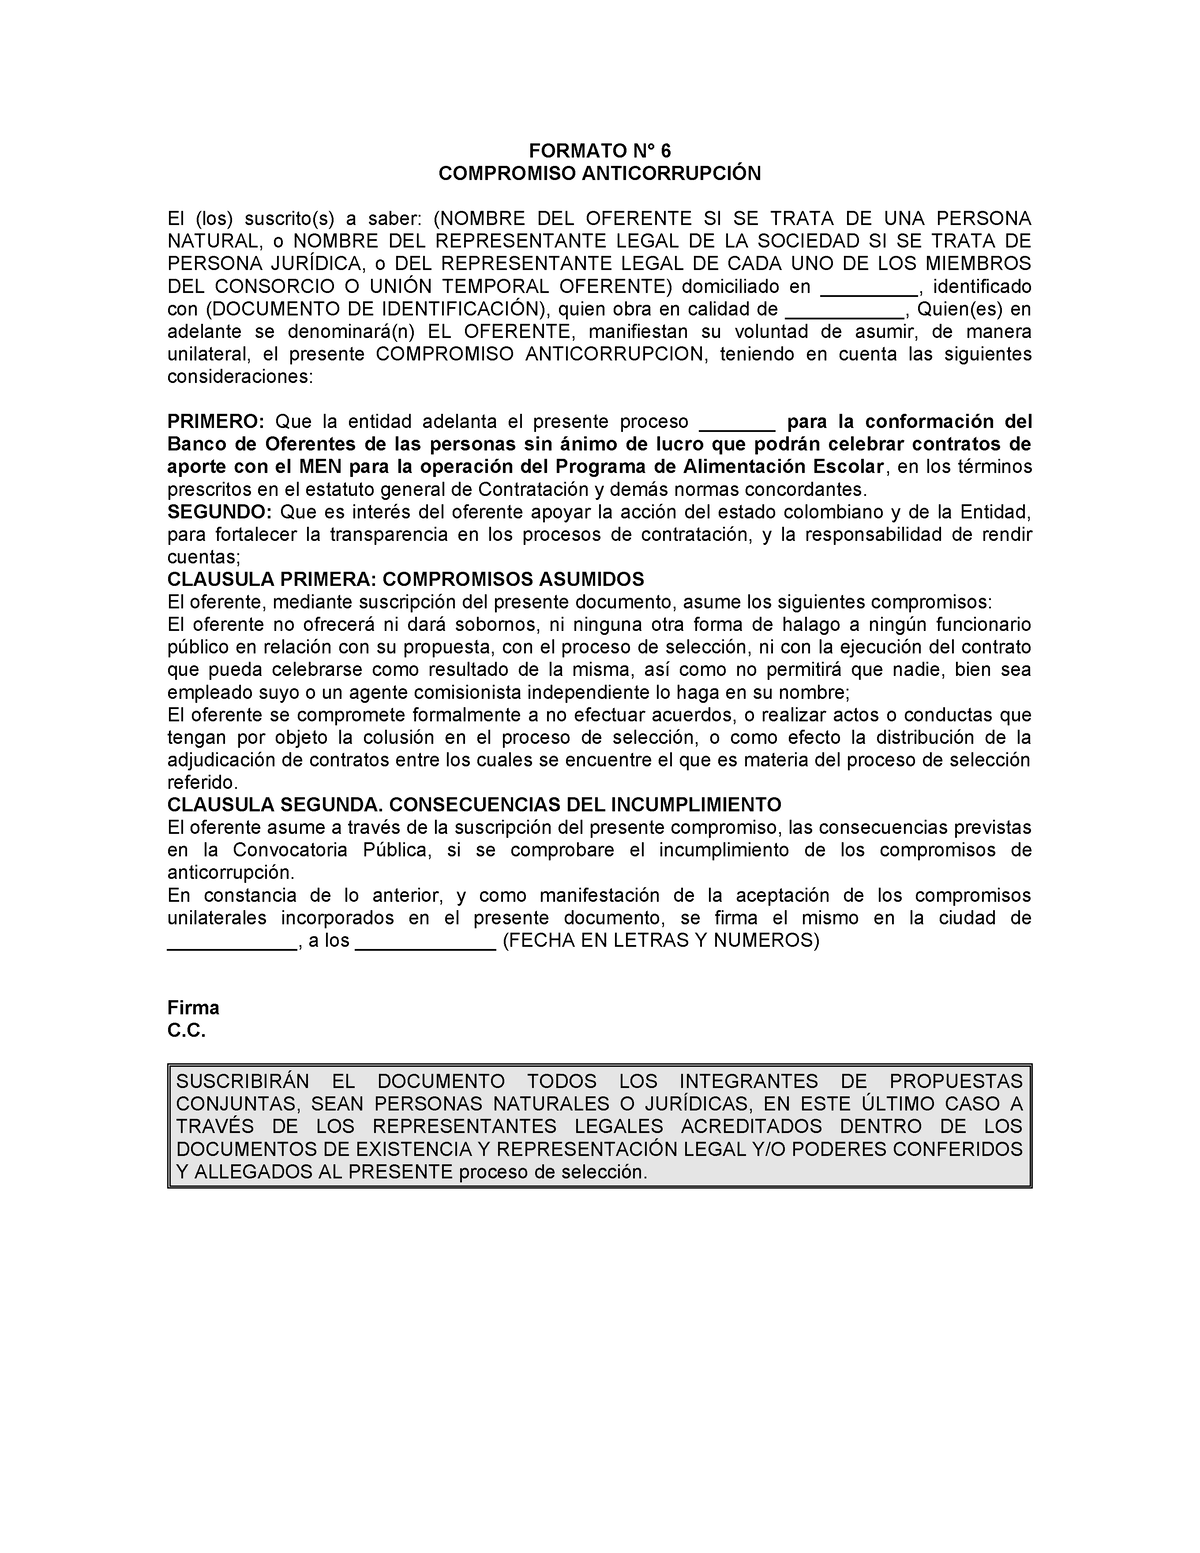 Articles-347633 Formato N6 Compromiso anticorrupcion - FORMATO N° 6 ...